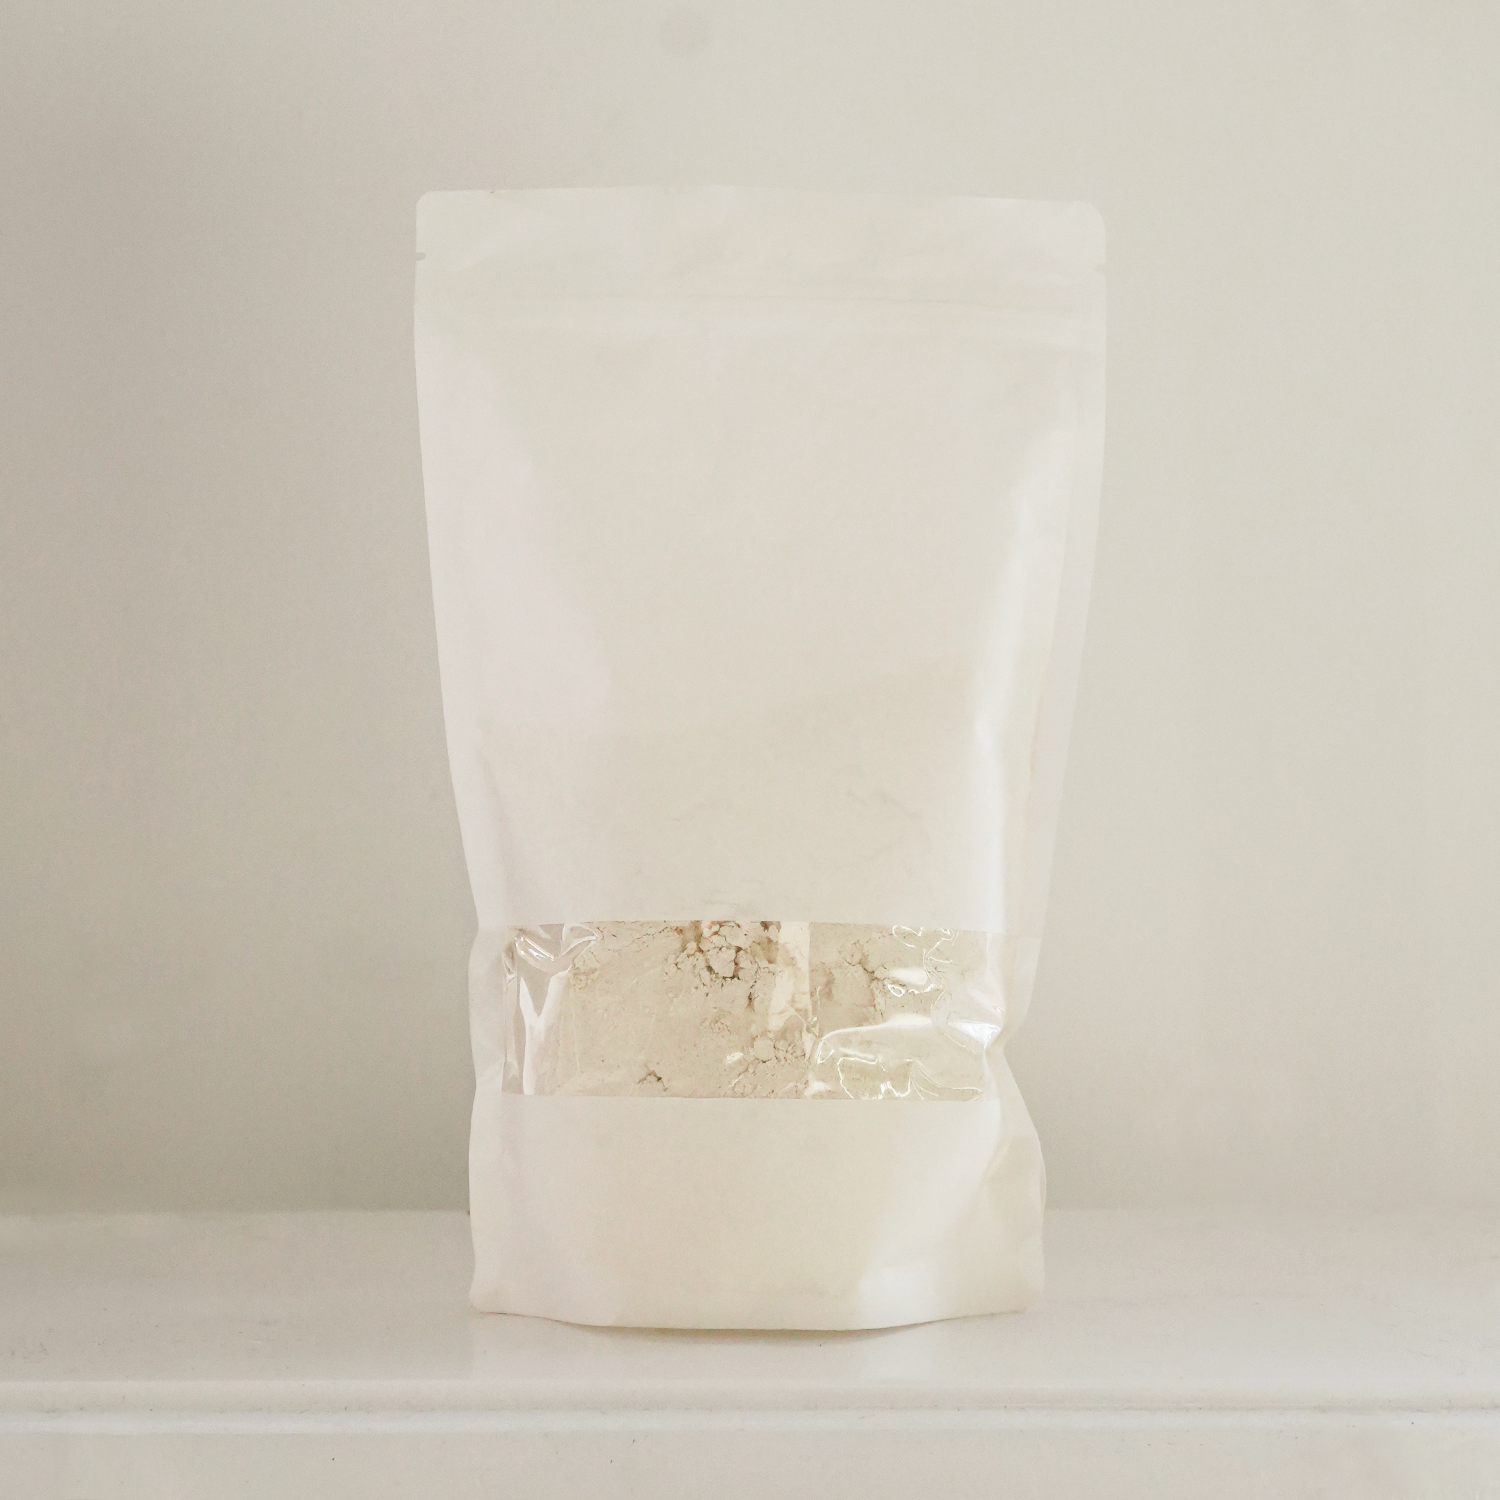 Bolsa de papel blanca con harina de trigo ecológica